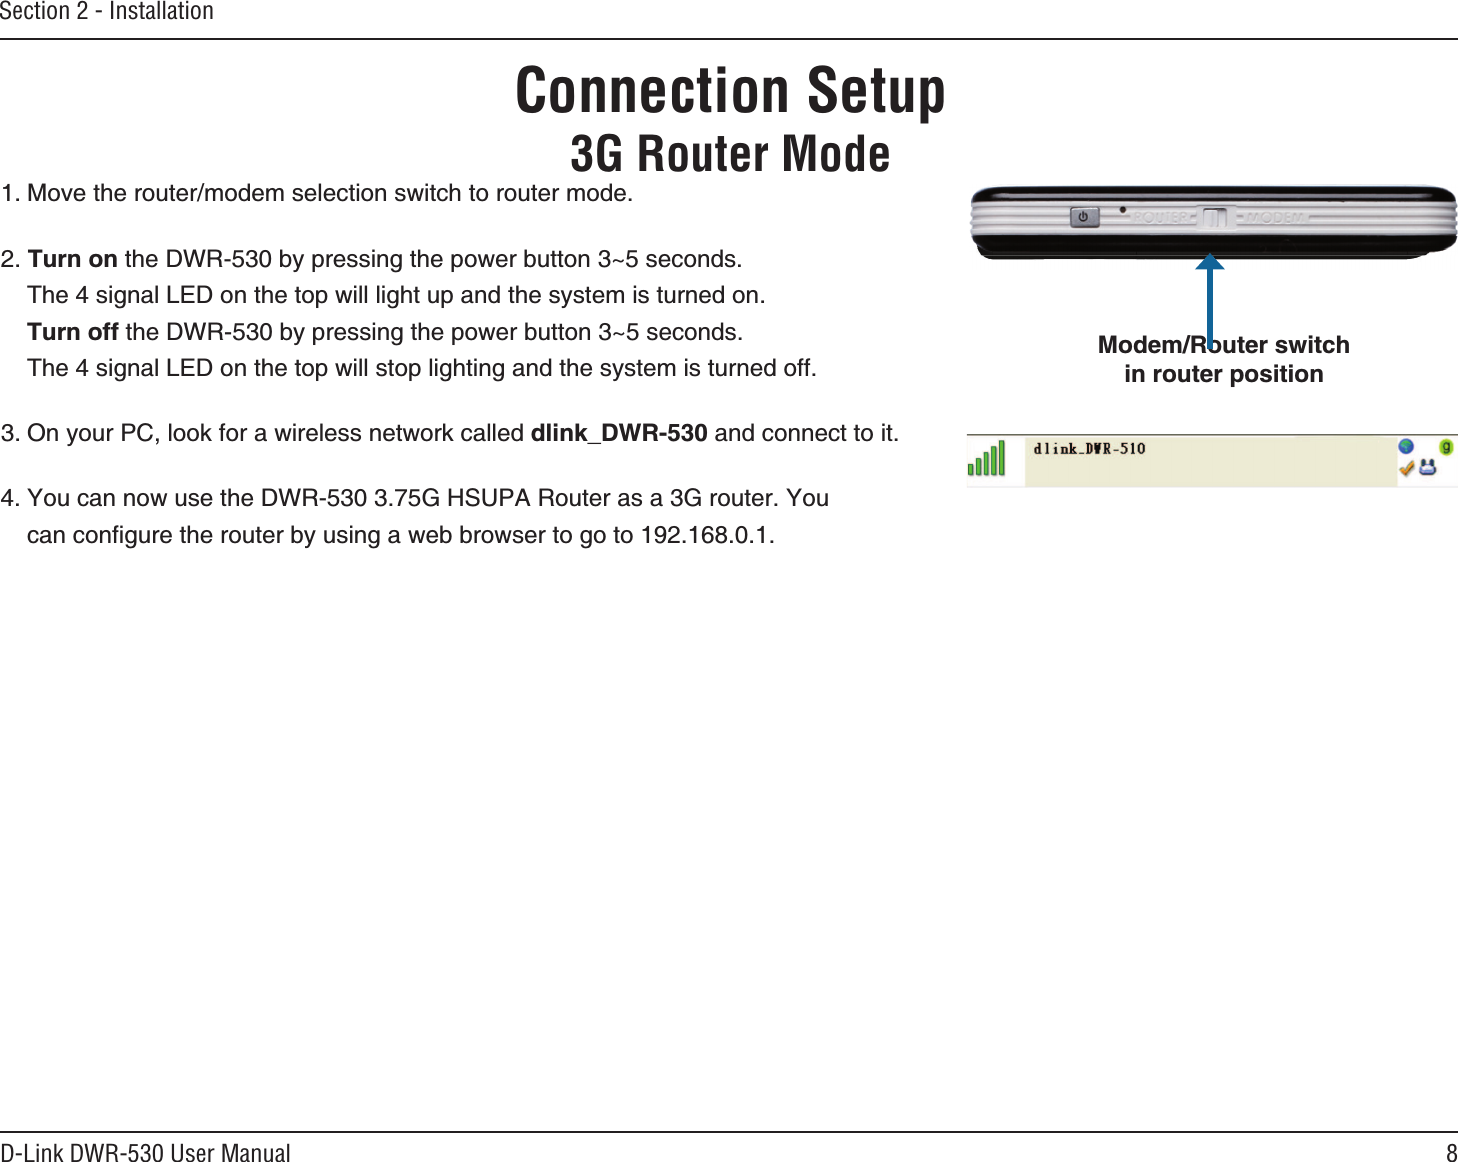 8D-Link DWR-530 User ManualSection 2 - InstallationConnection Setup3G Router Mode/QXGVJGTQWVGTOQFGOUGNGEVKQPUYKVEJVQTQWVGTOQFG6WTPQPVJG&amp;94D[RTGUUKPIVJGRQYGTDWVVQP`UGEQPFU6JGUKIPCN.&apos;&amp;QPVJGVQRYKNNNKIJVWRCPFVJGU[UVGOKUVWTPGFQP6WTPQHHVJG&amp;94D[RTGUUKPIVJGRQYGTDWVVQP`UGEQPFU6JGUKIPCN.&apos;&amp;QPVJGVQRYKNNUVQRNKIJVKPICPFVJGU[UVGOKUVWTPGFQHH1P[QWT2%NQQMHQTCYKTGNGUUPGVYQTMECNNGFFNKPMA&amp;94CPFEQPPGEVVQKV;QWECPPQYWUGVJG&amp;94)*572#4QWVGTCUC)TQWVGT;QWECPEQPſIWTGVJGTQWVGTD[WUKPICYGDDTQYUGTVQIQVQ/QFGO4QWVGTUYKVEJKPTQWVGTRQUKVKQP